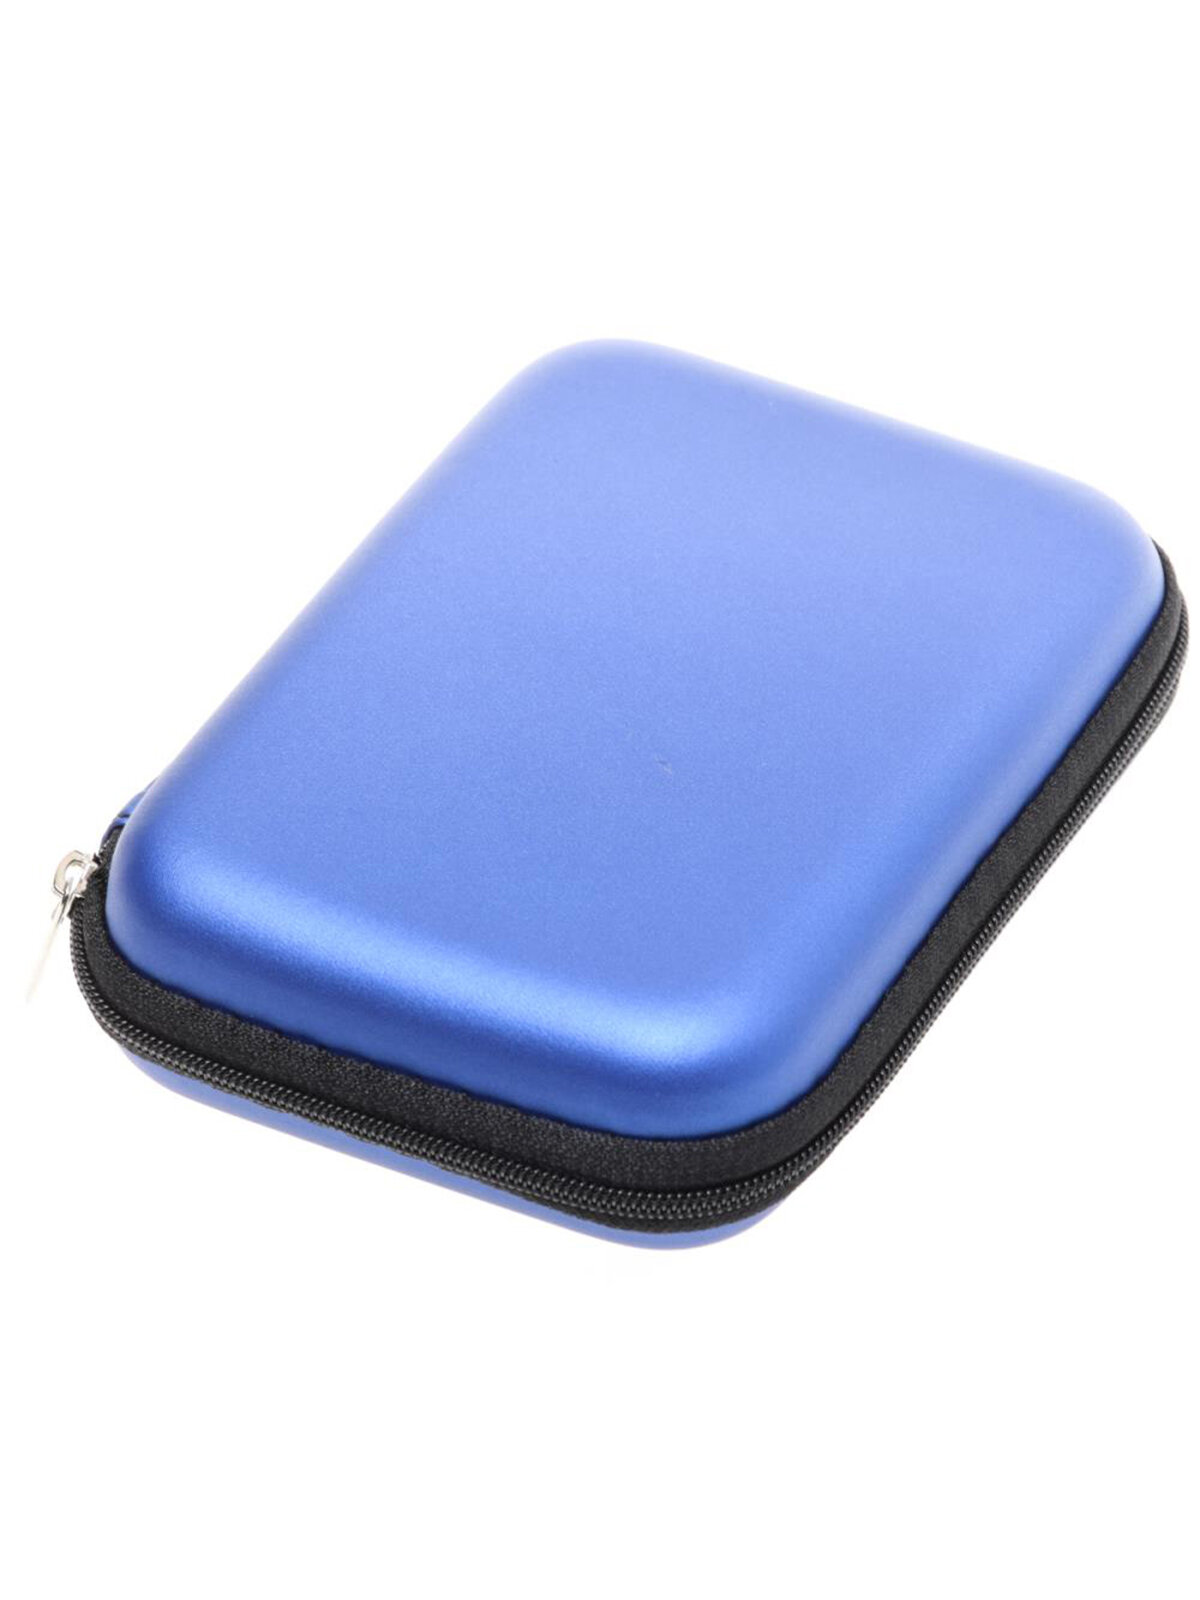 Чехол GSMIN для внешнего жесткого диска HDD 3.5 (150х80х30мм Синий)